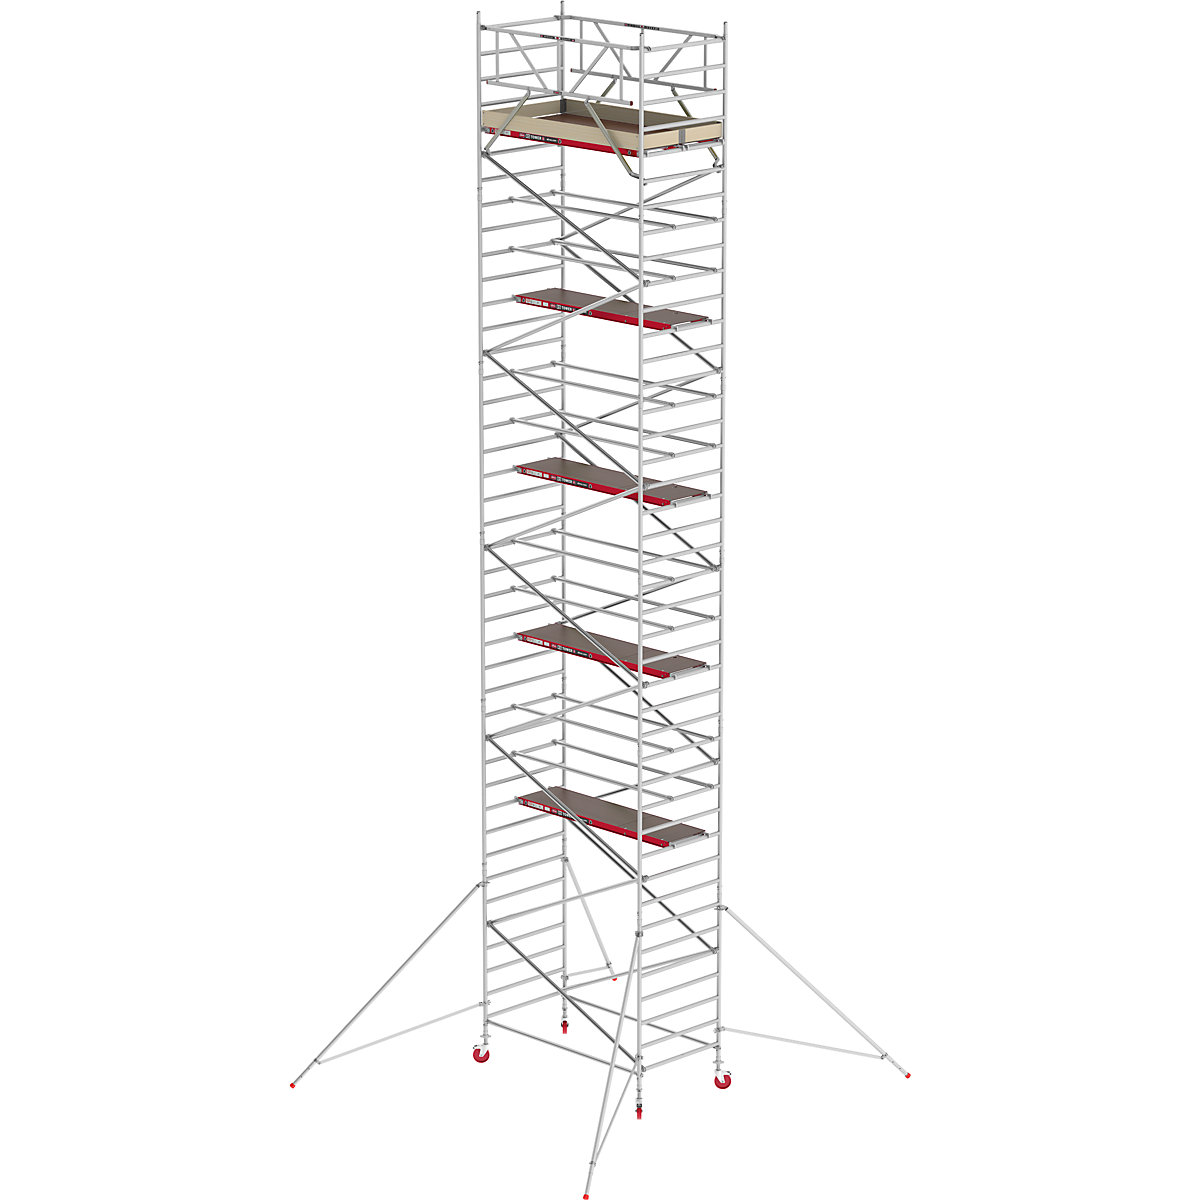 Trabattello mobile RS TOWER 42 largo – Altrex, piattaforma in legno, lunghezza 2,45 m, altezza di lavoro 13,20 m-2